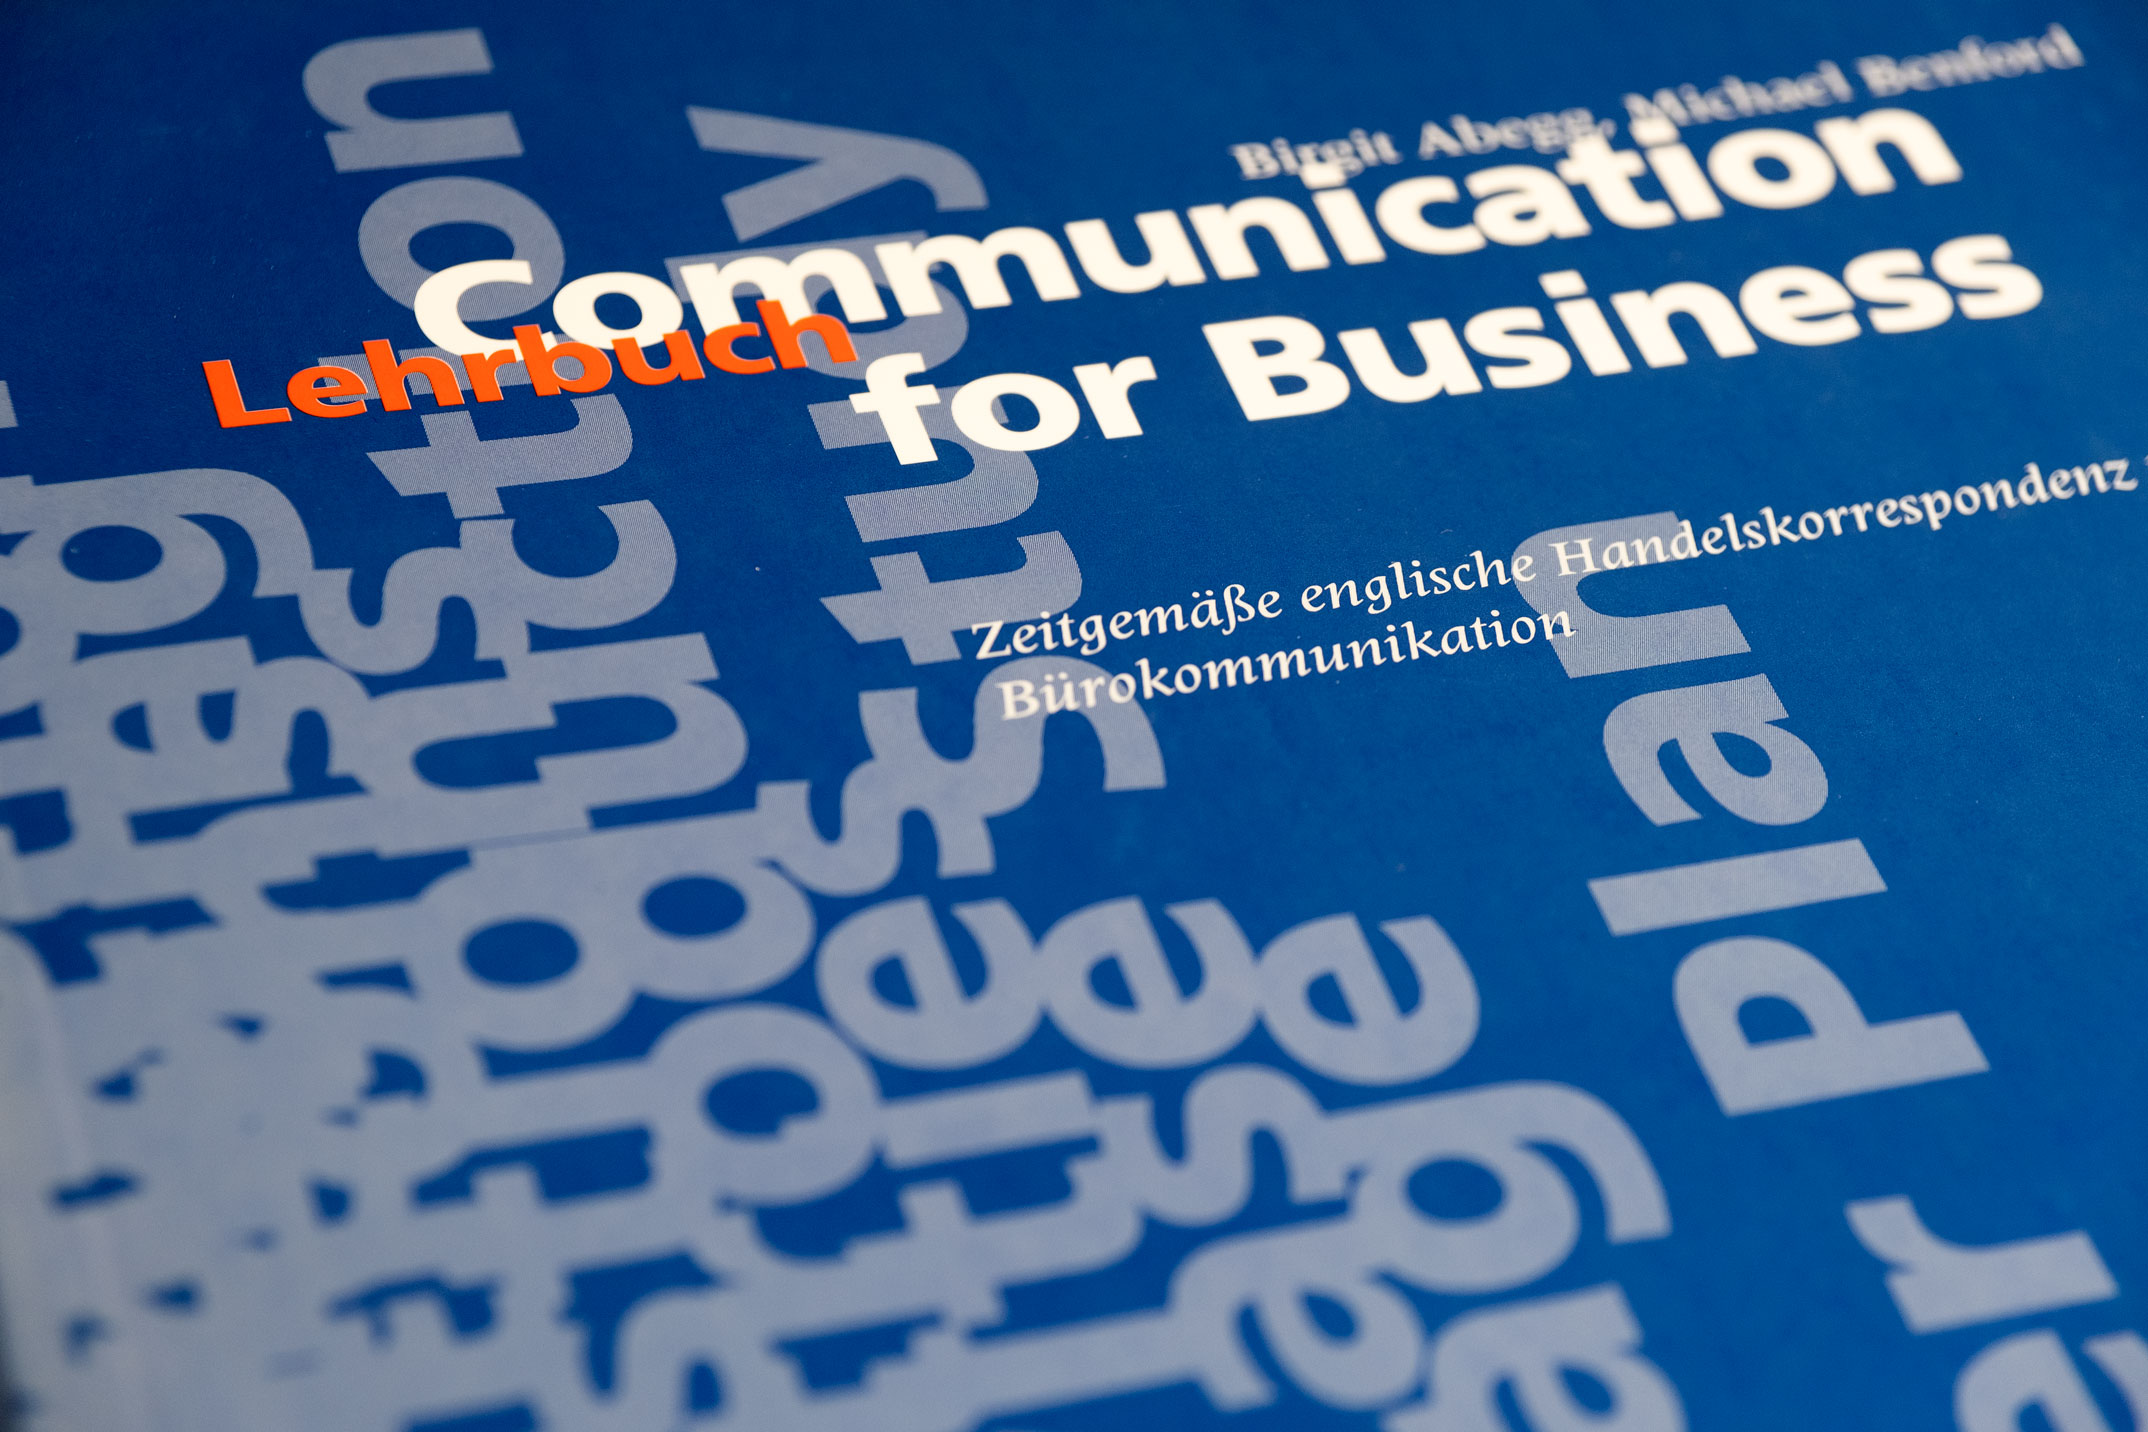 Buchumschlag Lehrbuch, Typografie, Lehrwerksreihe Communication for Business, Hueber Verlag